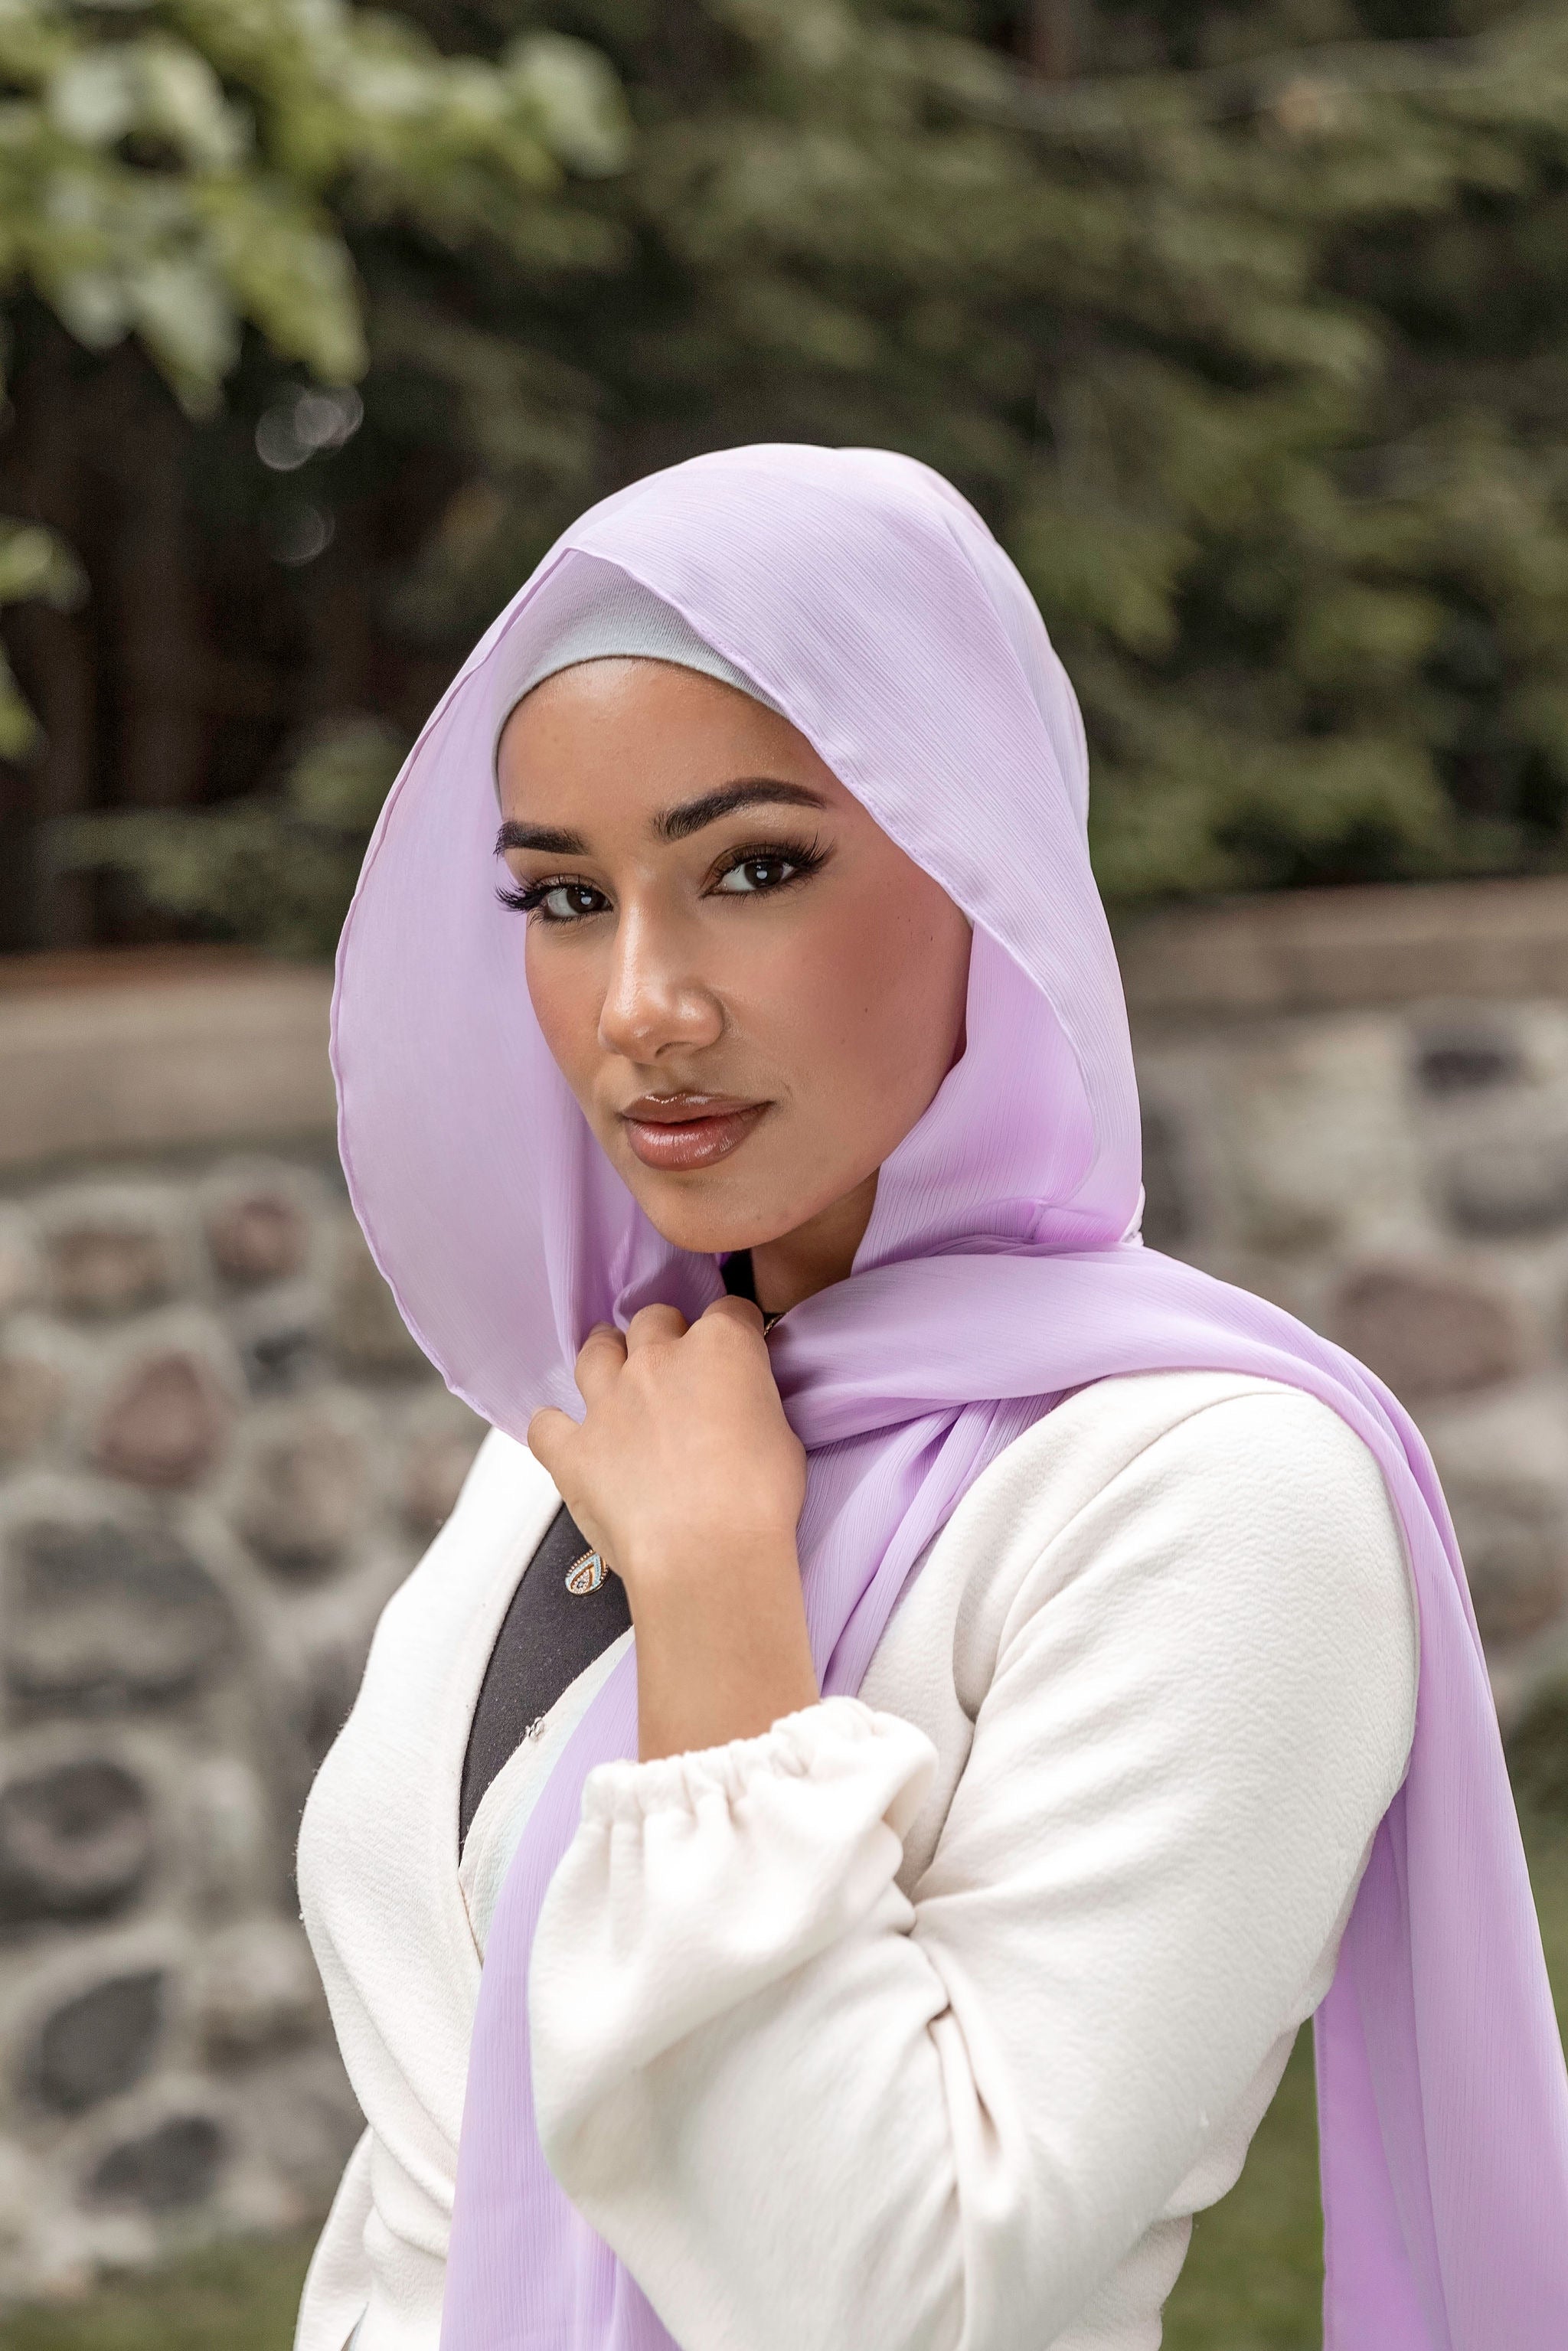 Modish Hijab Premium Jersey Hijab- Mocha Brown